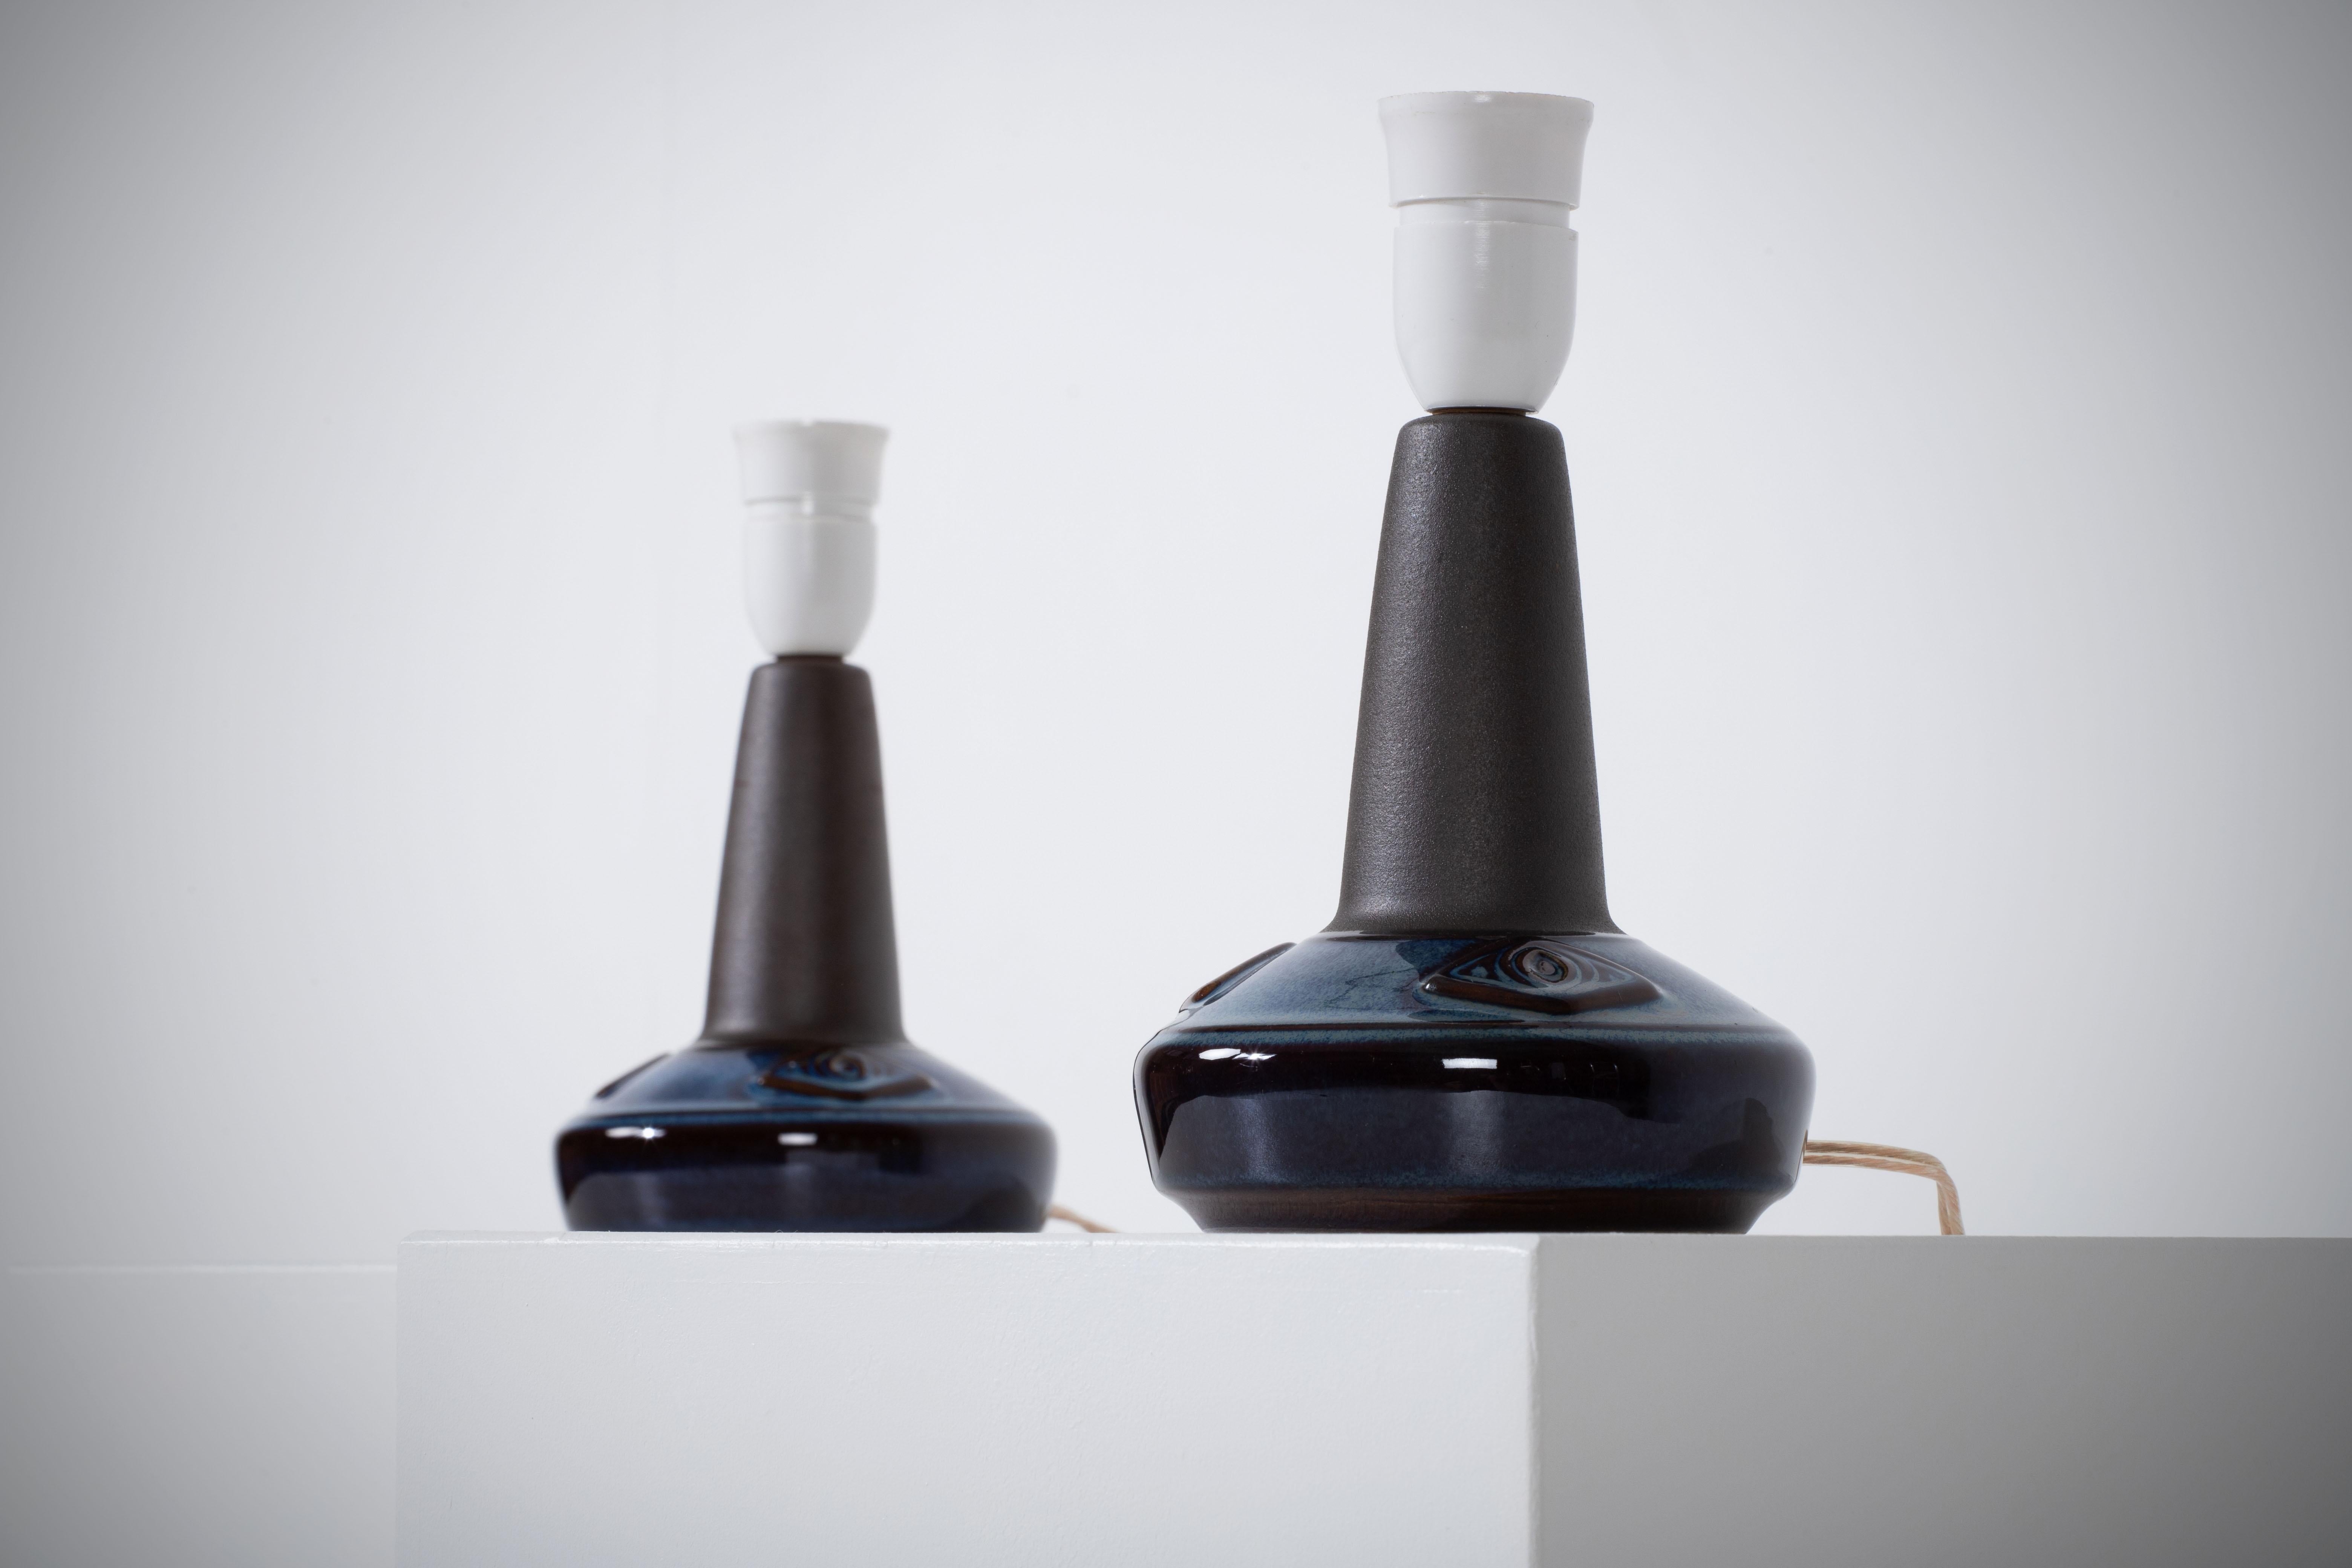 Ein Paar elegante Tischlampen, entworfen von Einar Johansen und hergestellt von Søholm in Bornholm, Dänemark, in den 1960er Jahren. 
Die Lampen sind aus Steingut gefertigt und tragen eine Signatur des Designers und des Herstellers, darunter 